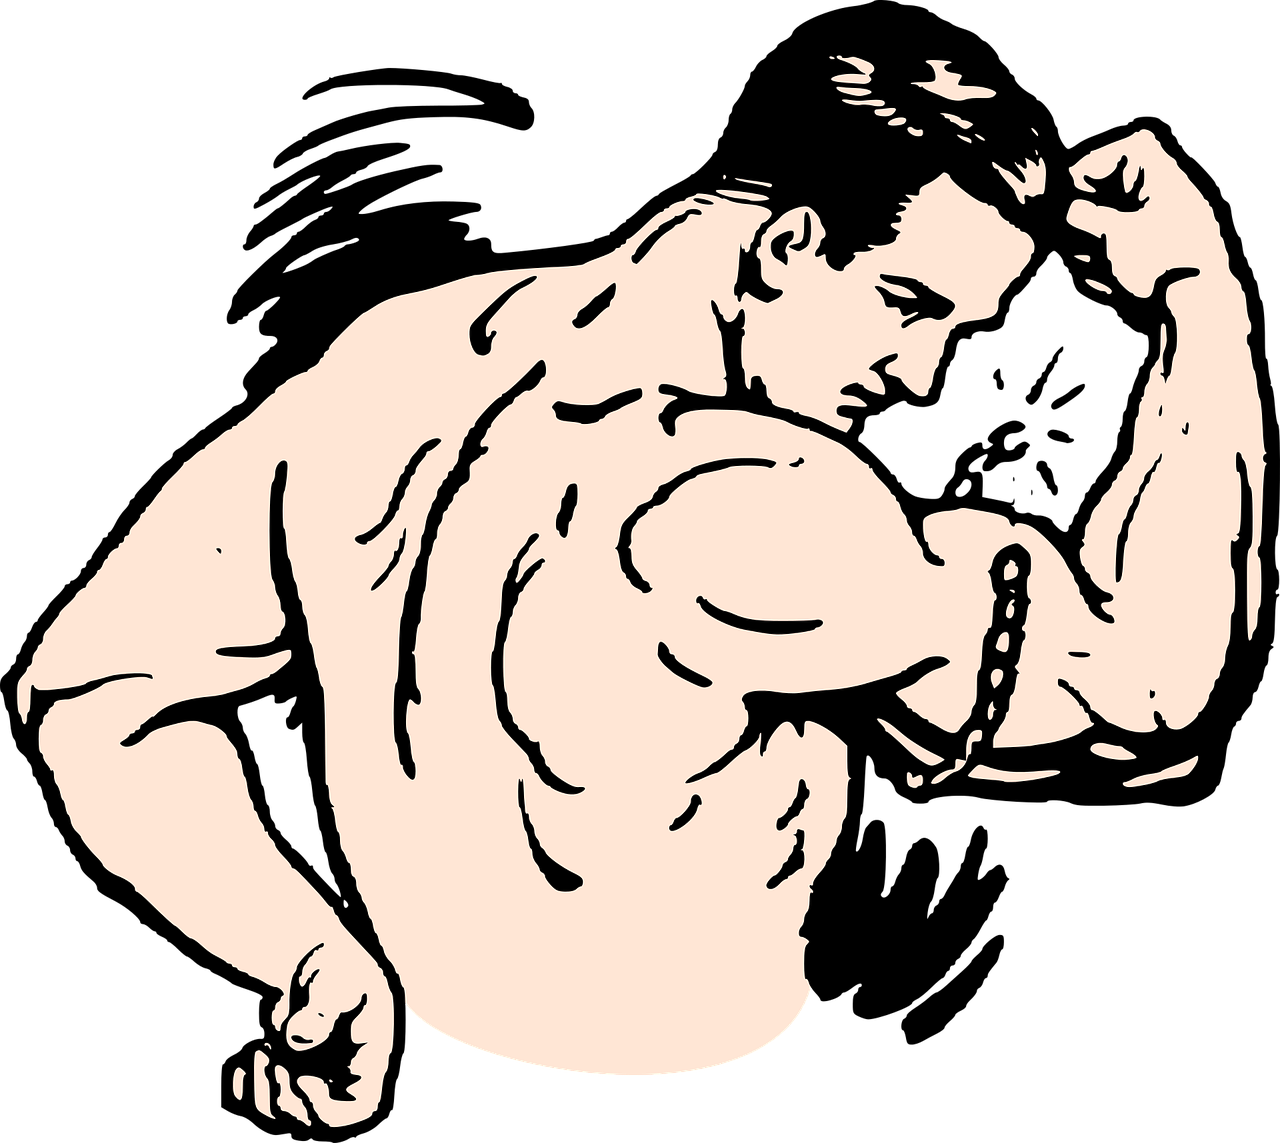 Ejercicios de flexiones para fortalecer los bíceps